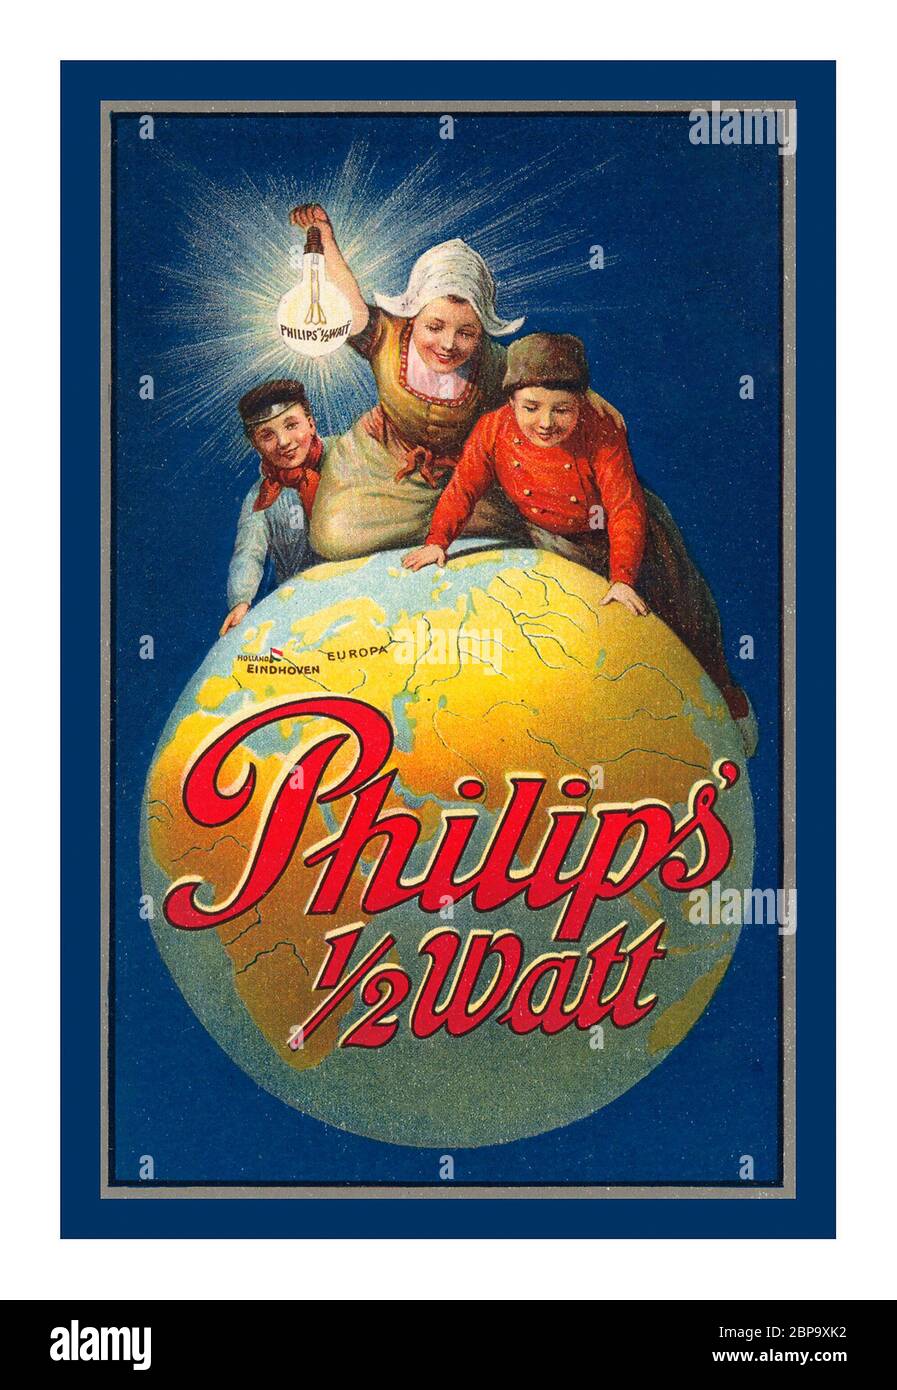 Philips 1/2 Watt, campagna pubblicitaria 1913 con bambini olandesi seduti sul mondo con una lampada Philips da 1/2 watt Aloft lampada Philips da 1/2 watt a incandescenza archivio storico pubblicità stampa . Prodotto a Parigi, Francia da Philips, con un'eccellente economia e una lunga durata. Foto Stock